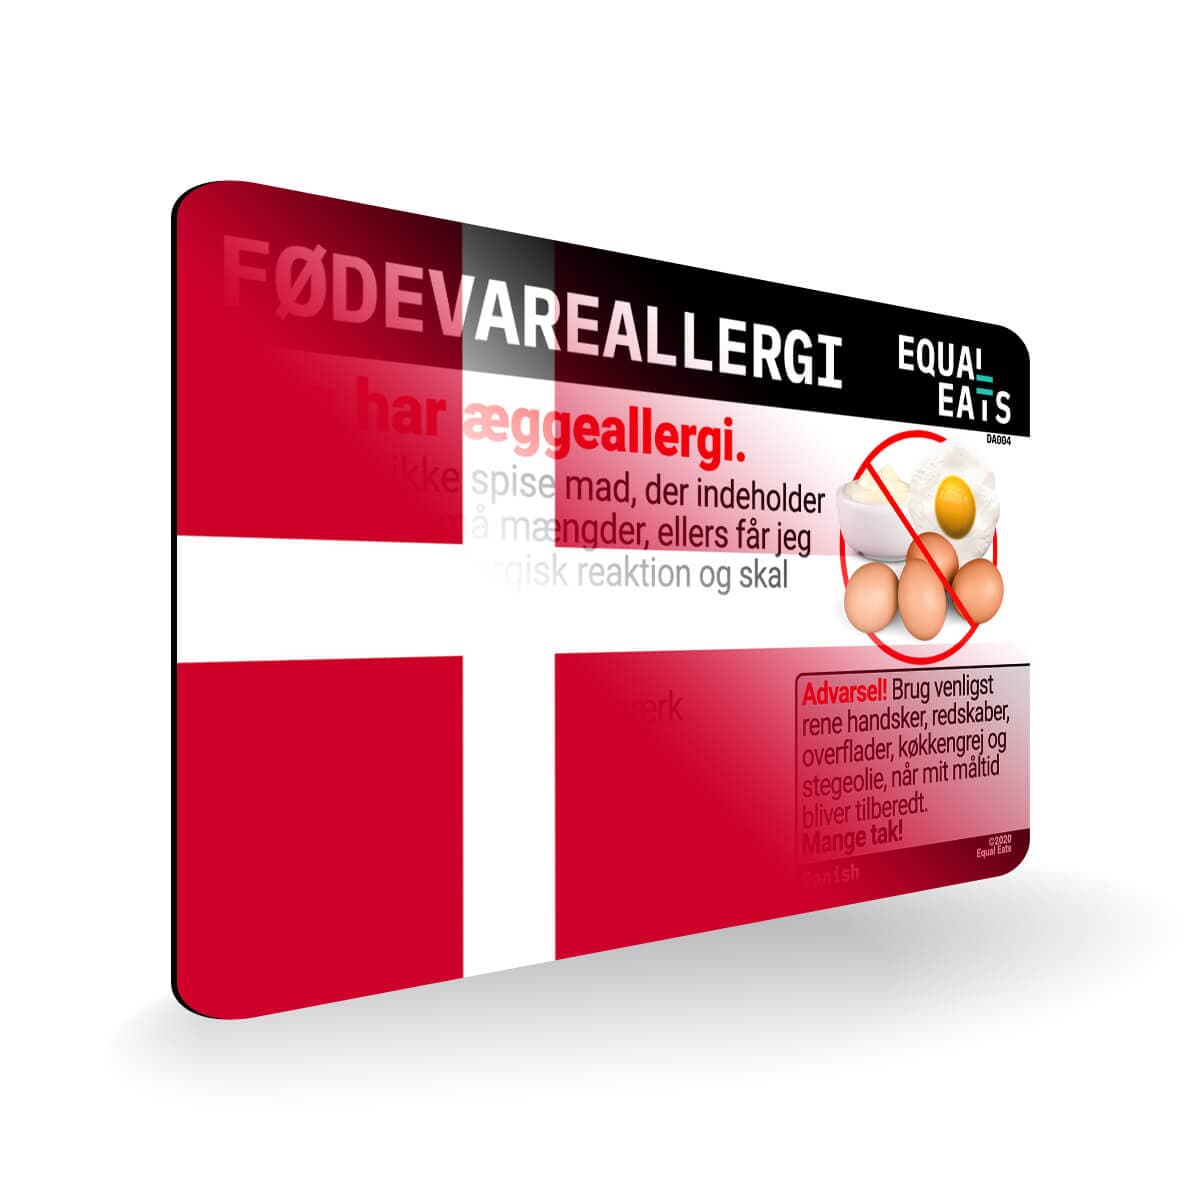 Egg Allergy in Danish. Egg Allergy Card for Denmark